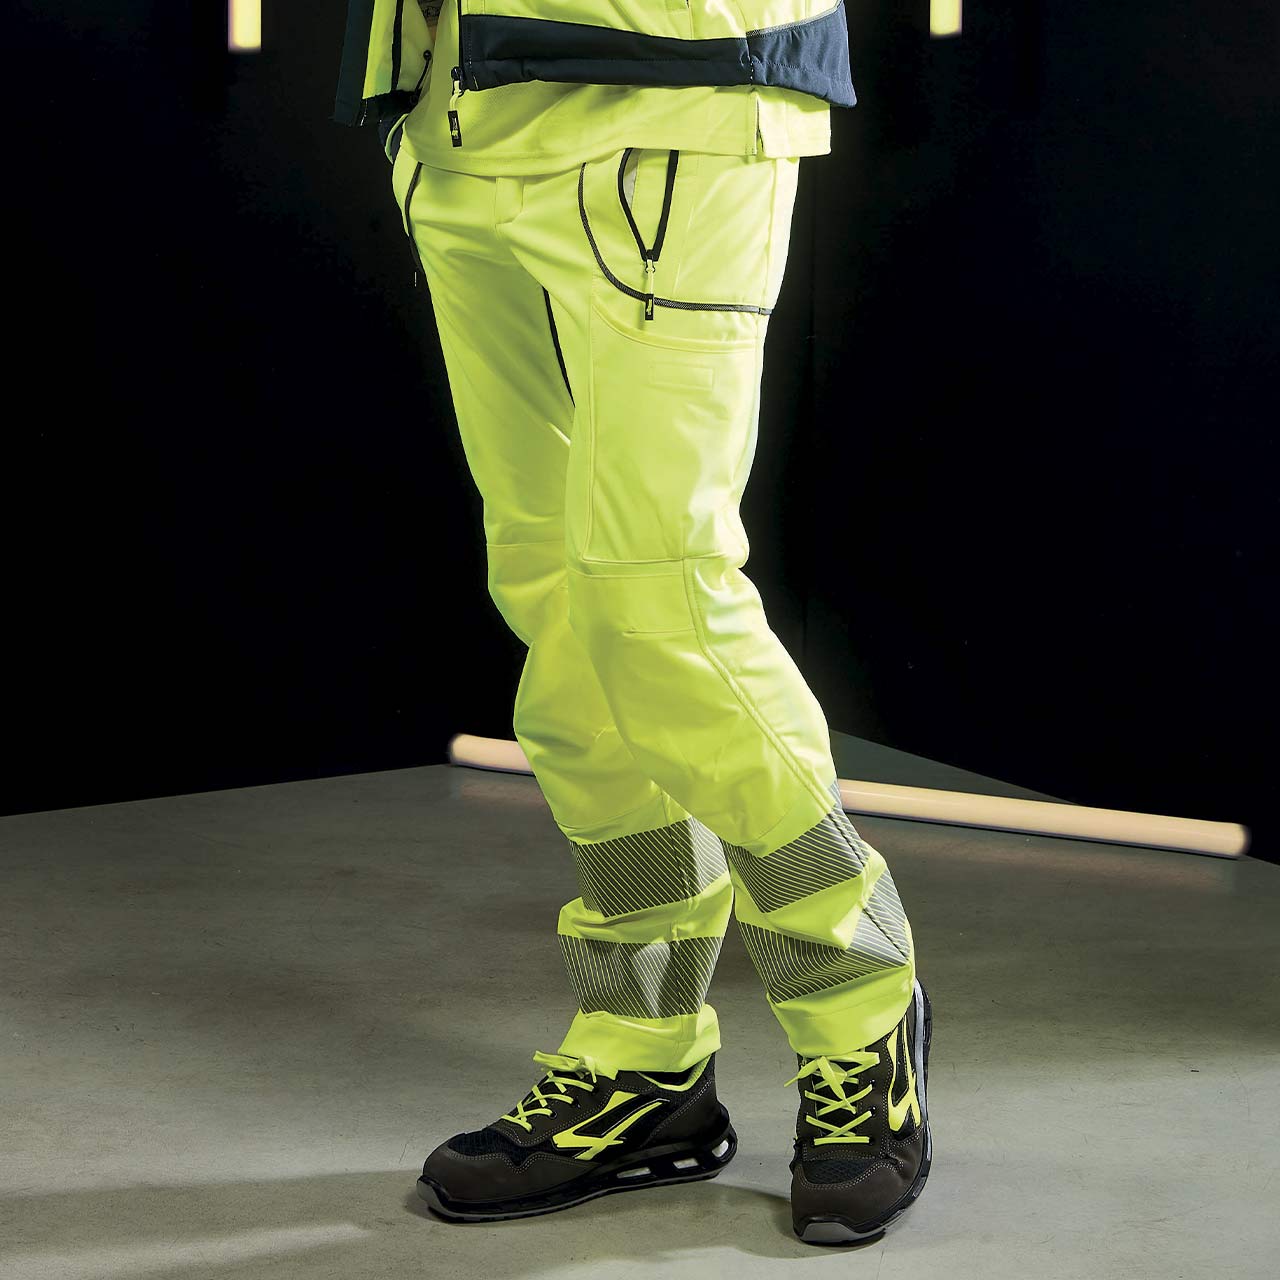 pantalone da lavoro upower modello ren colore yellow fluo indossato vista lato sinistro